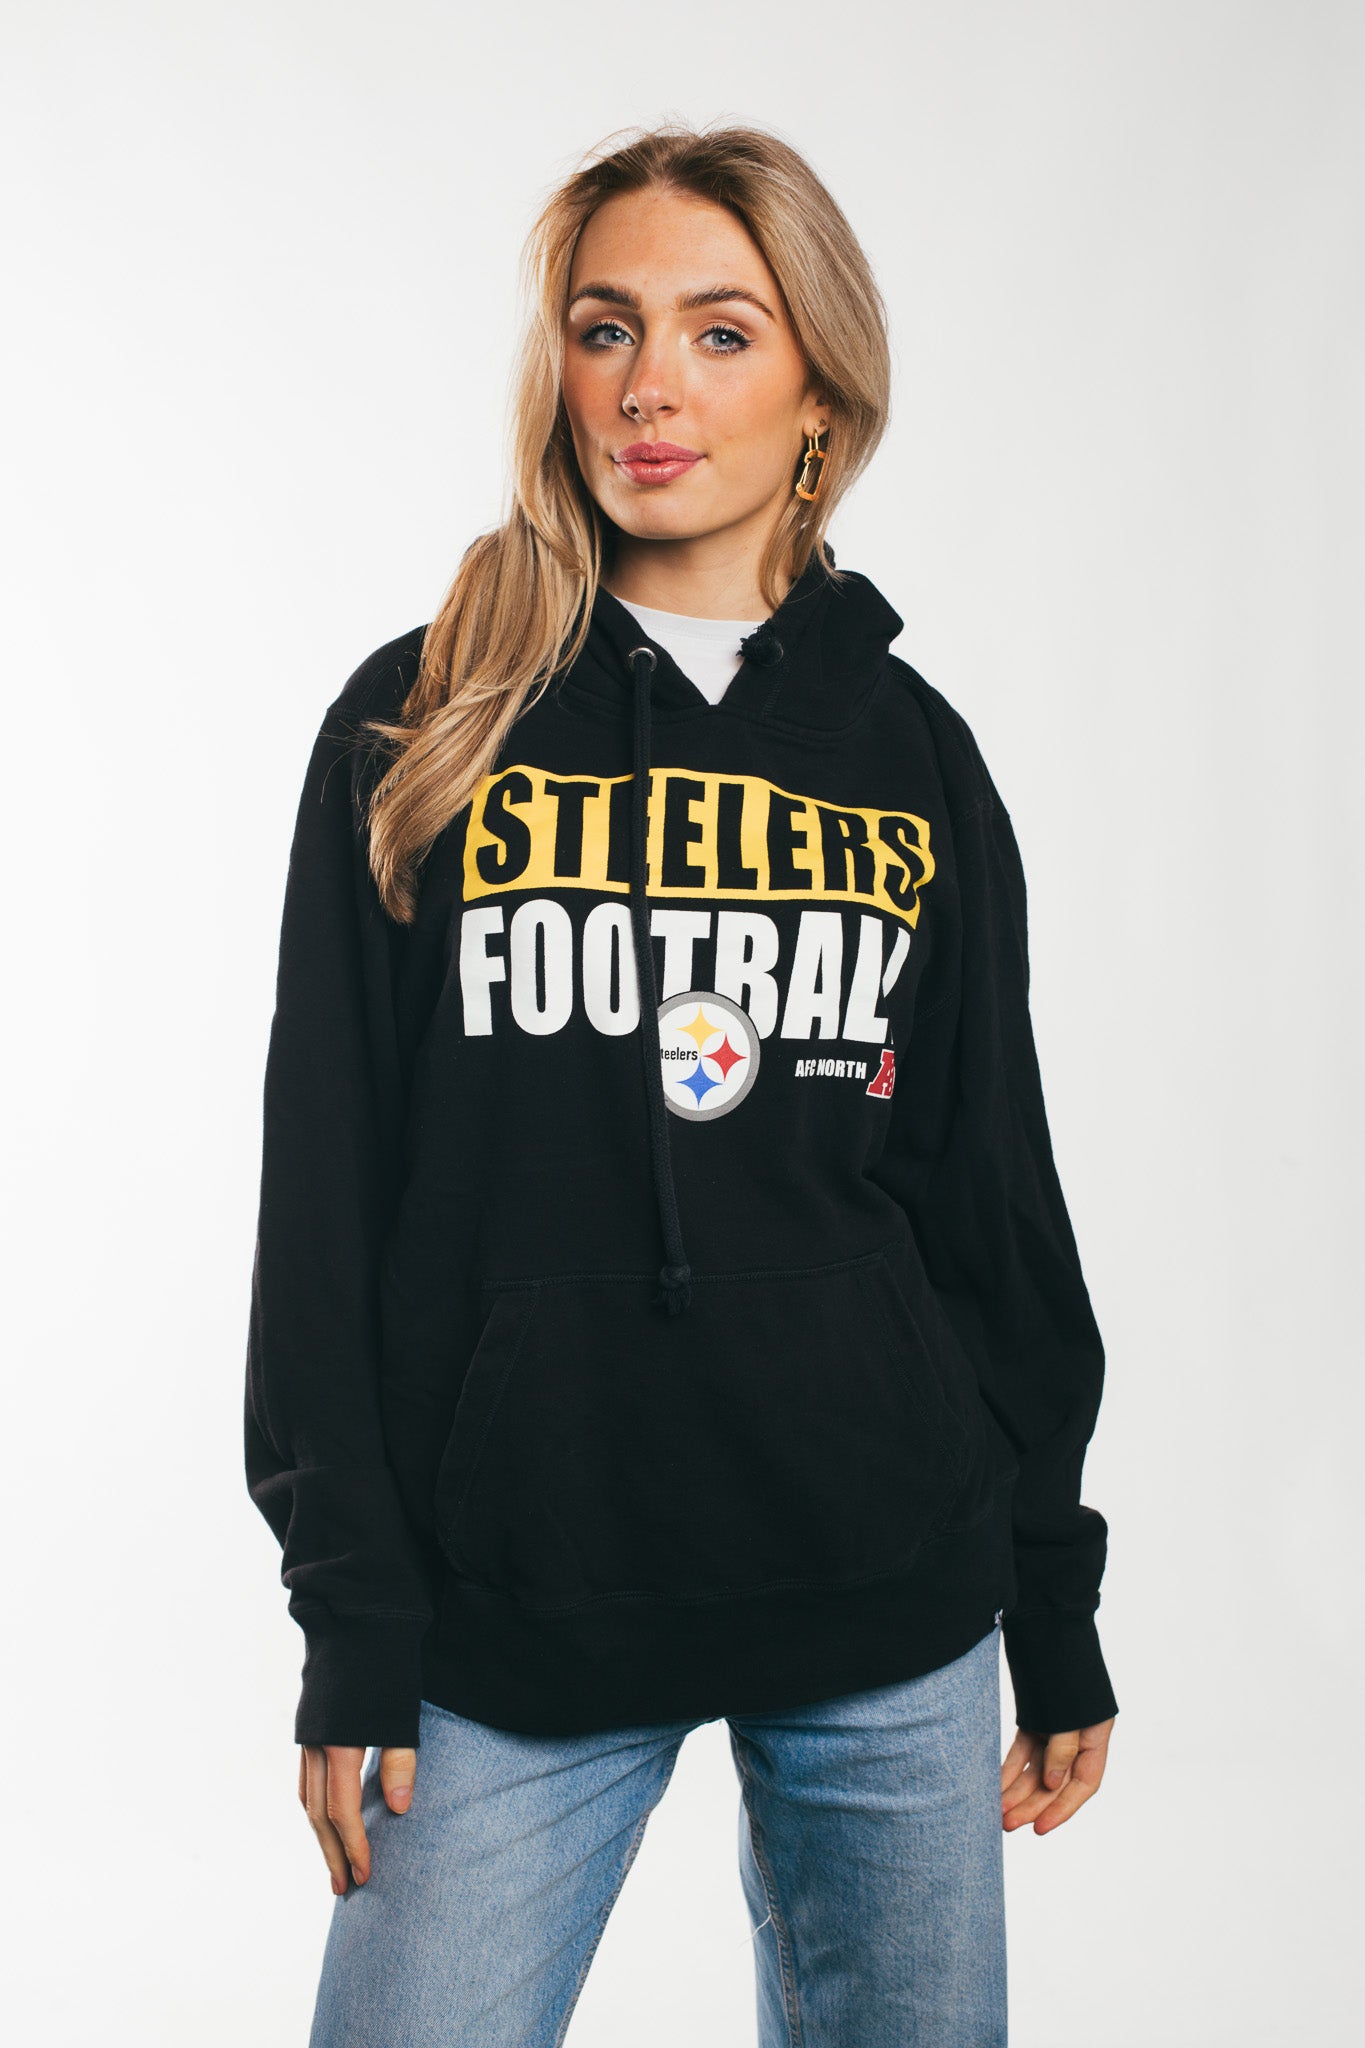 Steelers Football - Hoodie (XL)